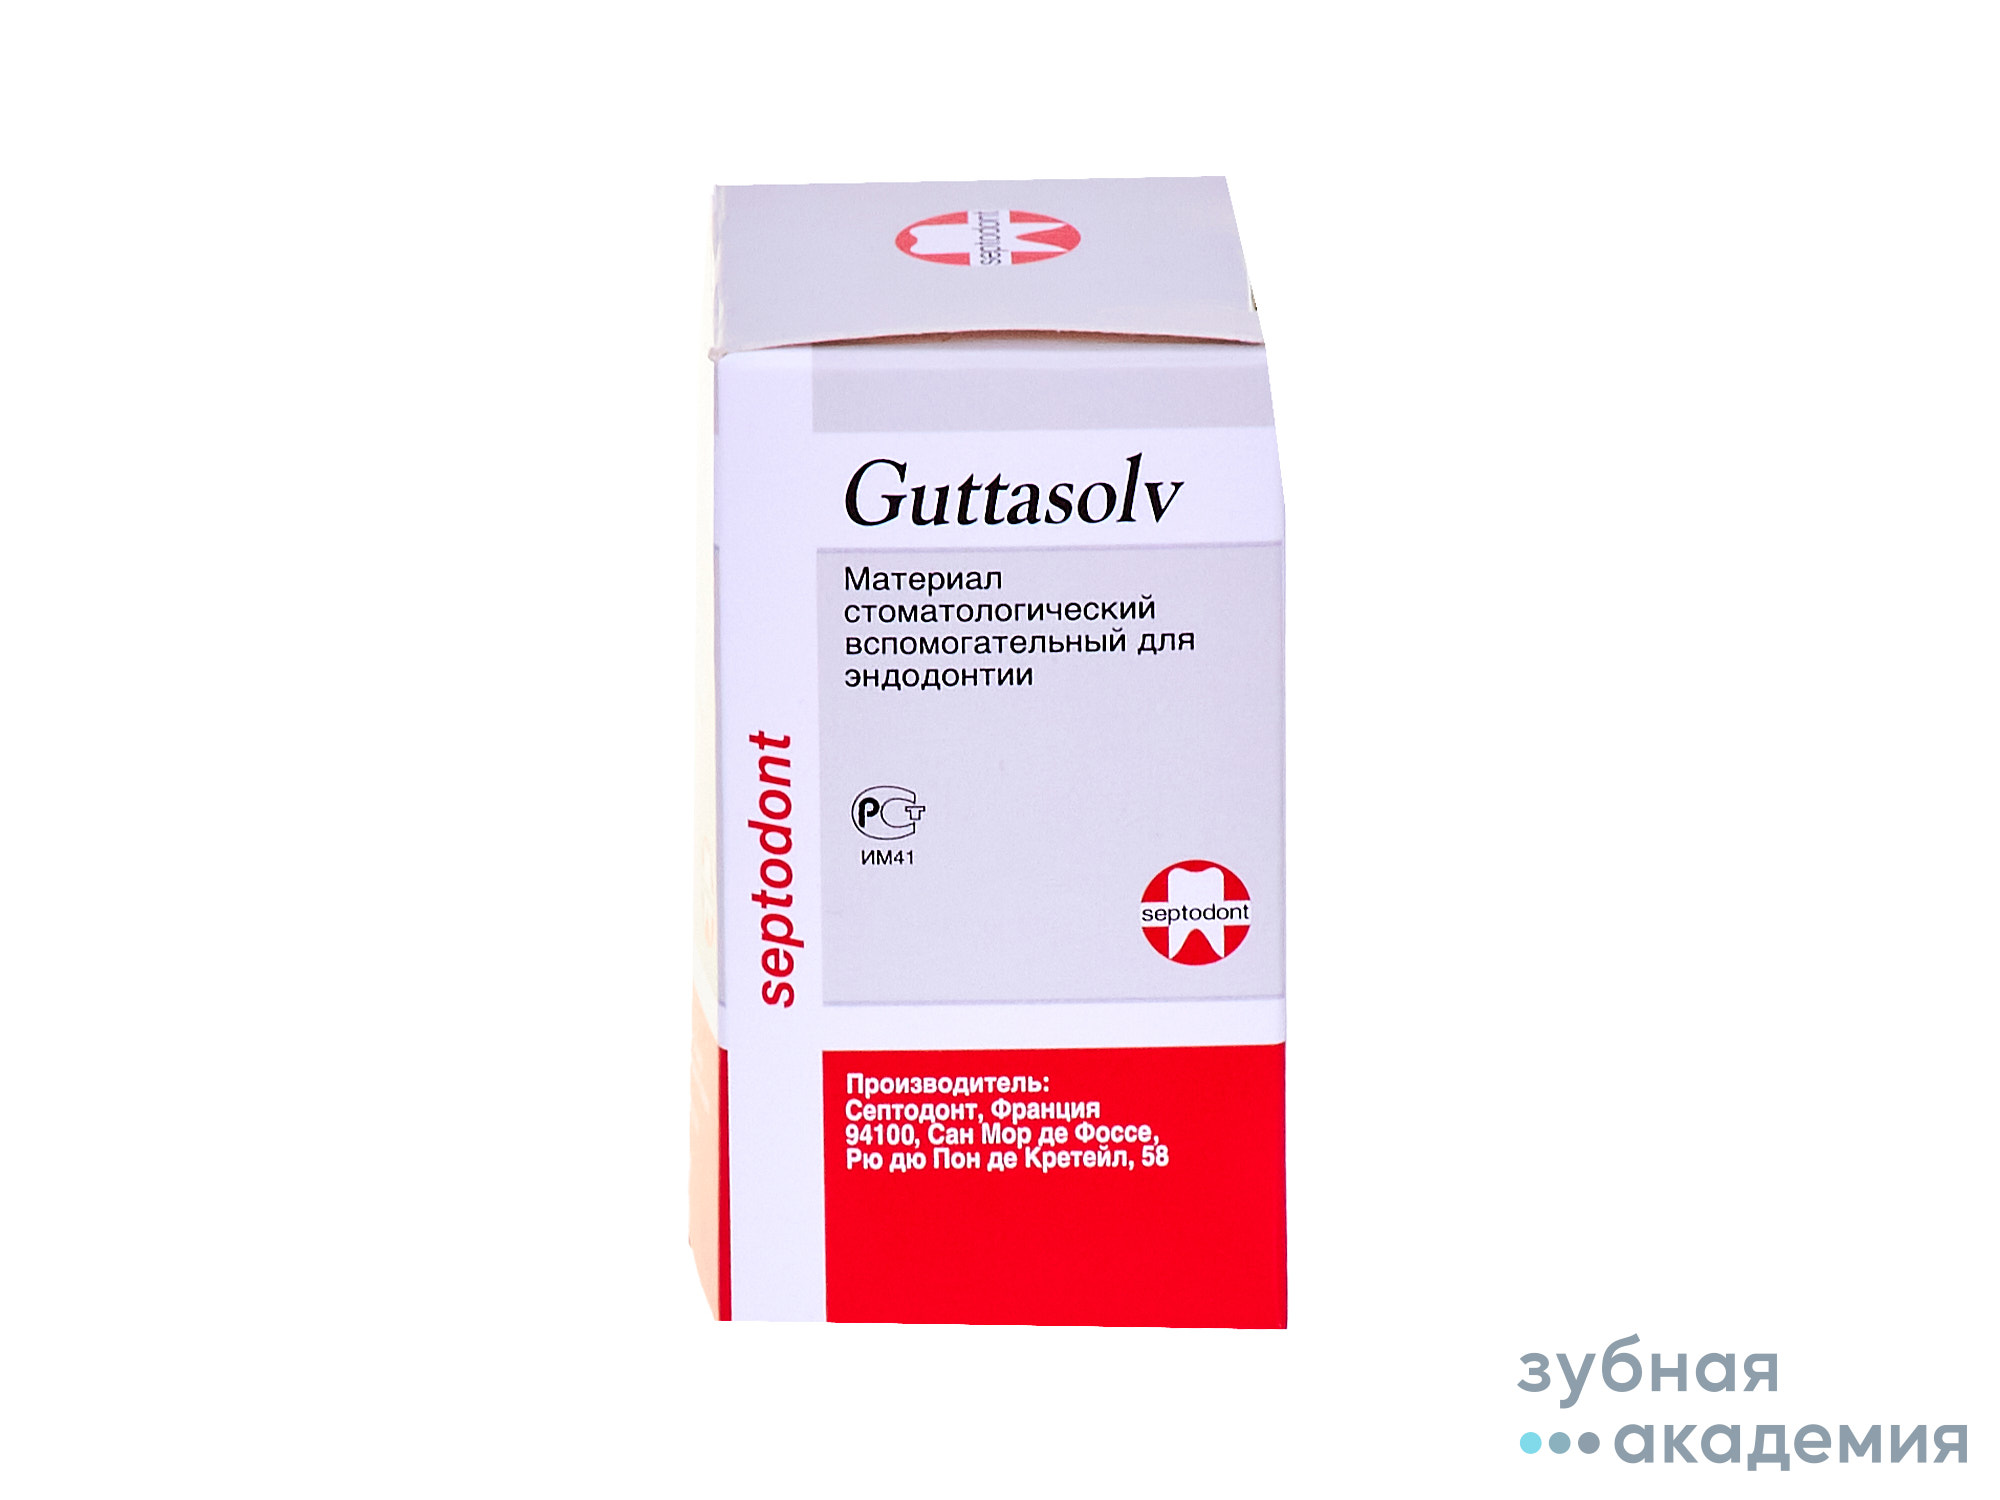 Guttasolv (Гуттасольв) 13 мл. - препарат для растворения гуттаперчи/Septodont/ Франция